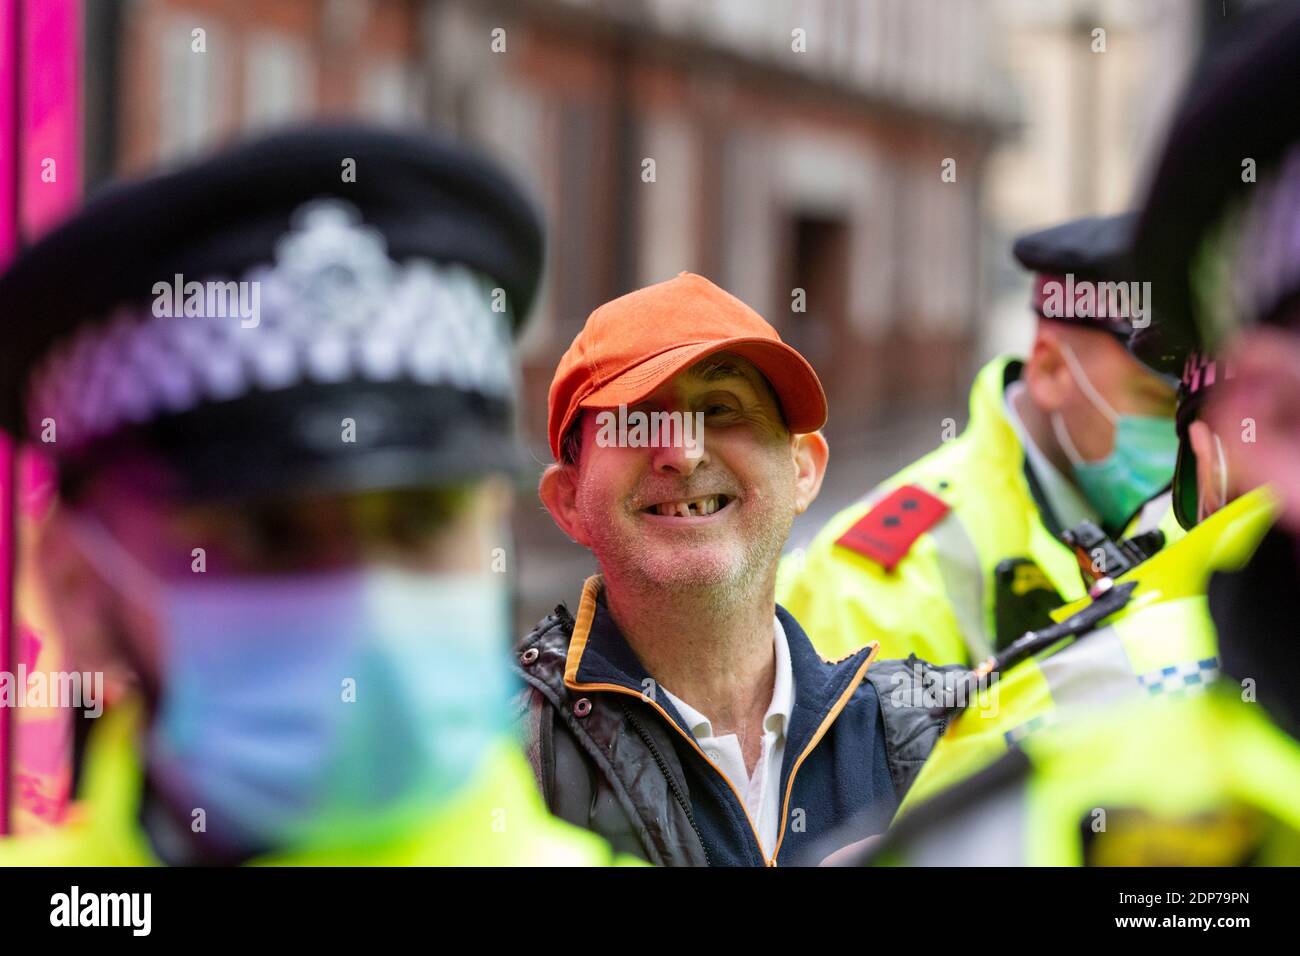 Un manifestant arrêté sourit devant la caméra lors de la manifestation anti-vaccin COVID-19, Westminster, Londres, 14 décembre 2020 Banque D'Images